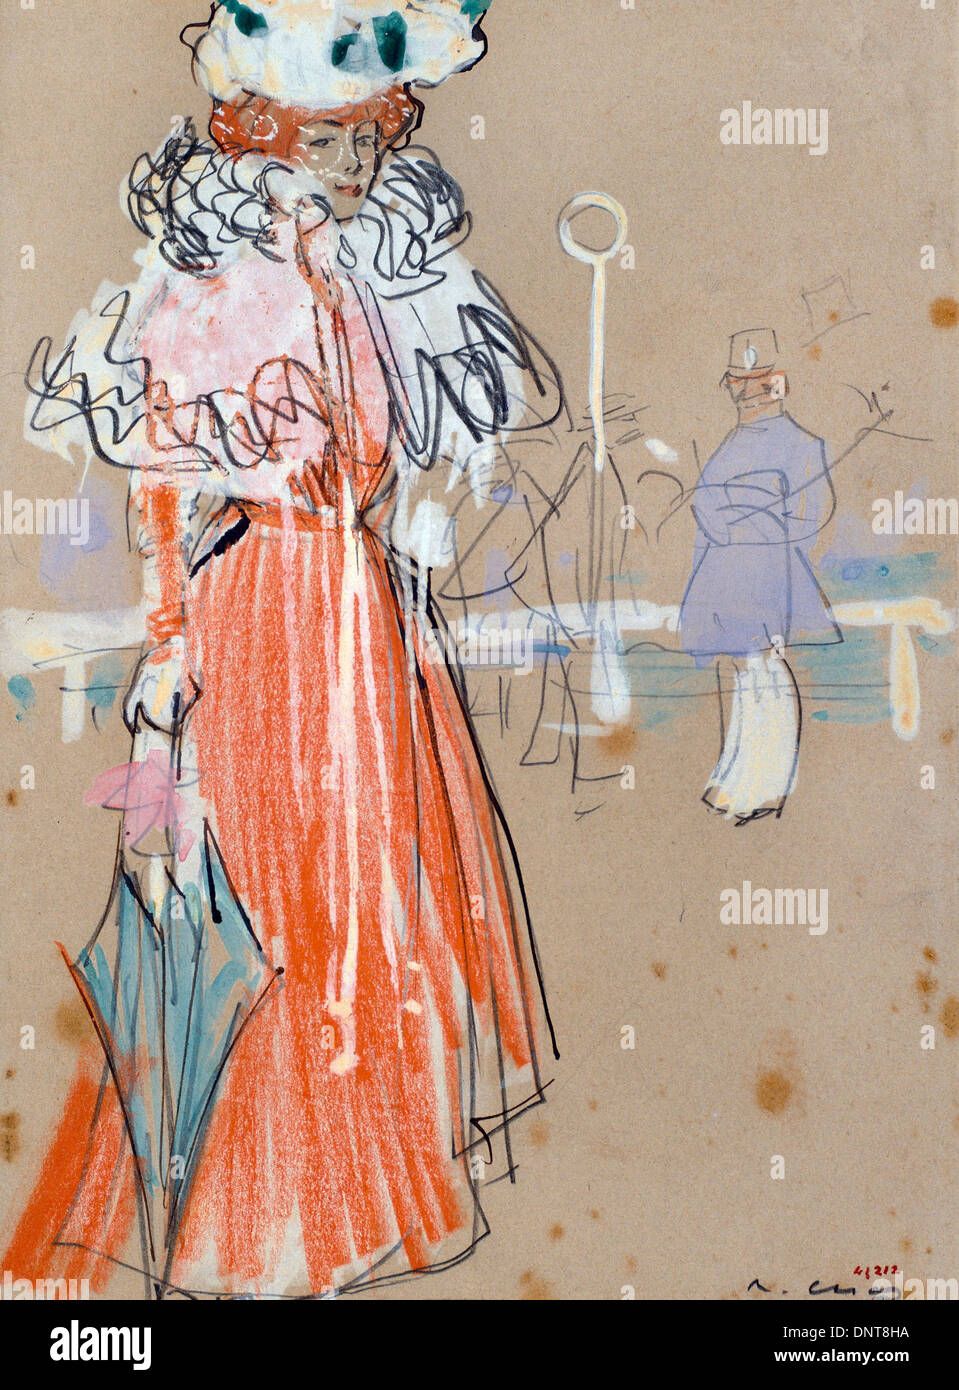 Ramon Casas ich Carbo, weibliche Figur in rot. Um 1900. Gouache, Bleistift auf Papier. Stockfoto